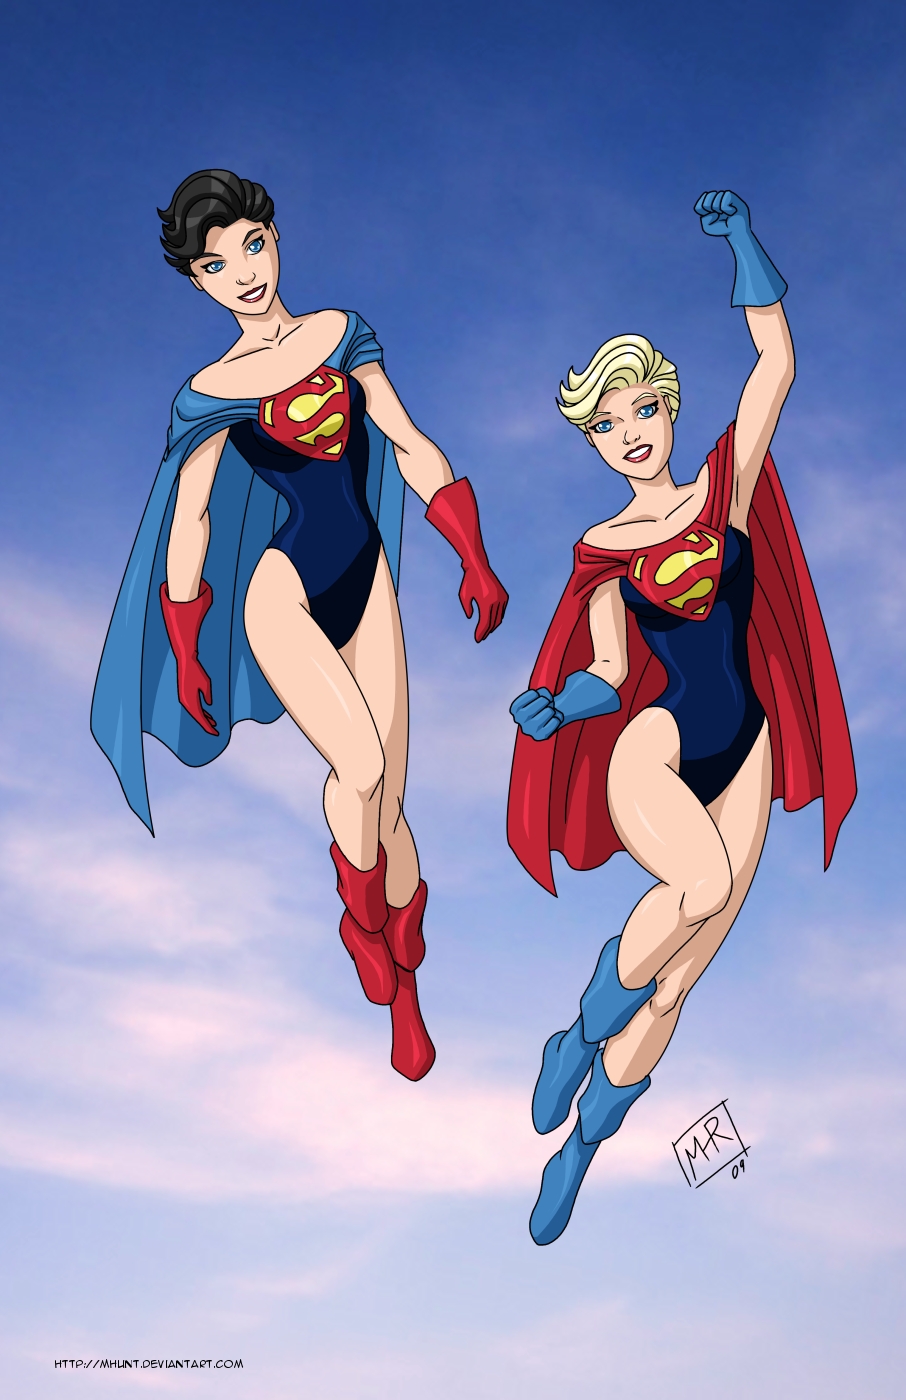 Supergirls_201109_by_mhunt.jpg